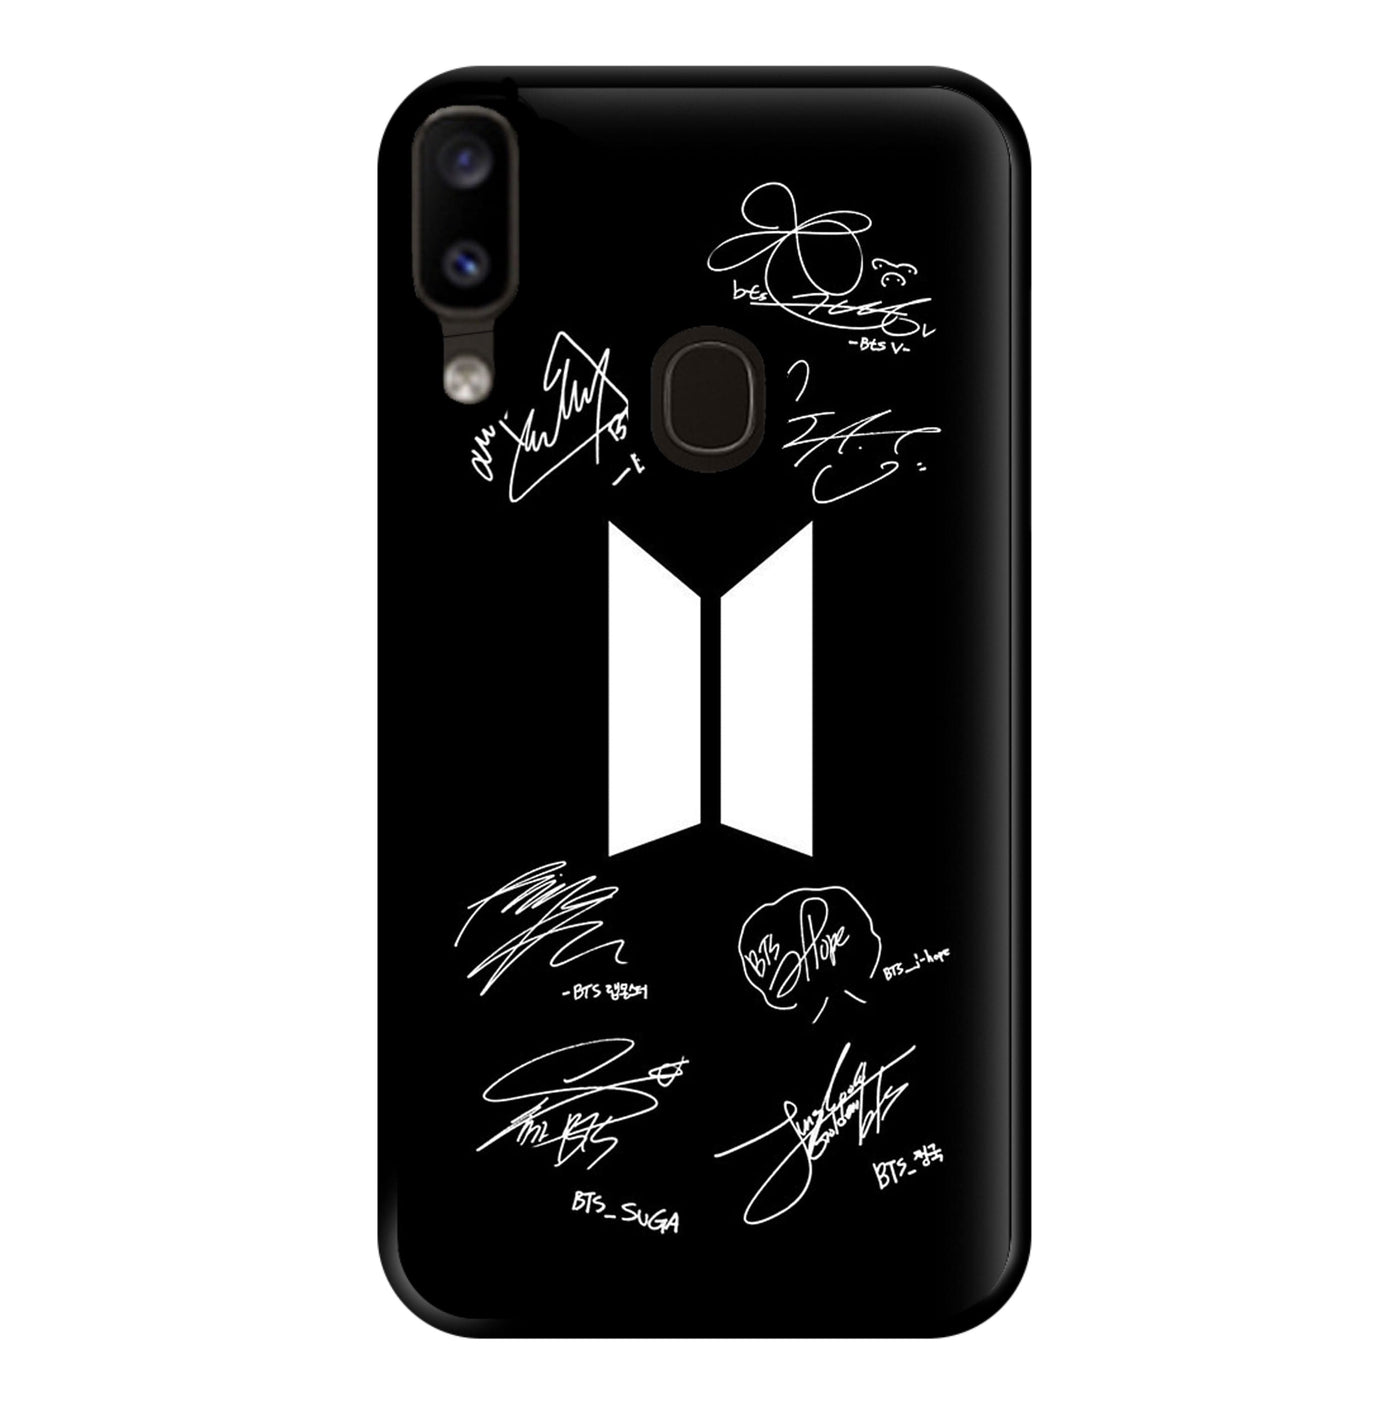 Black BTS Logo and Signatures Phone Case